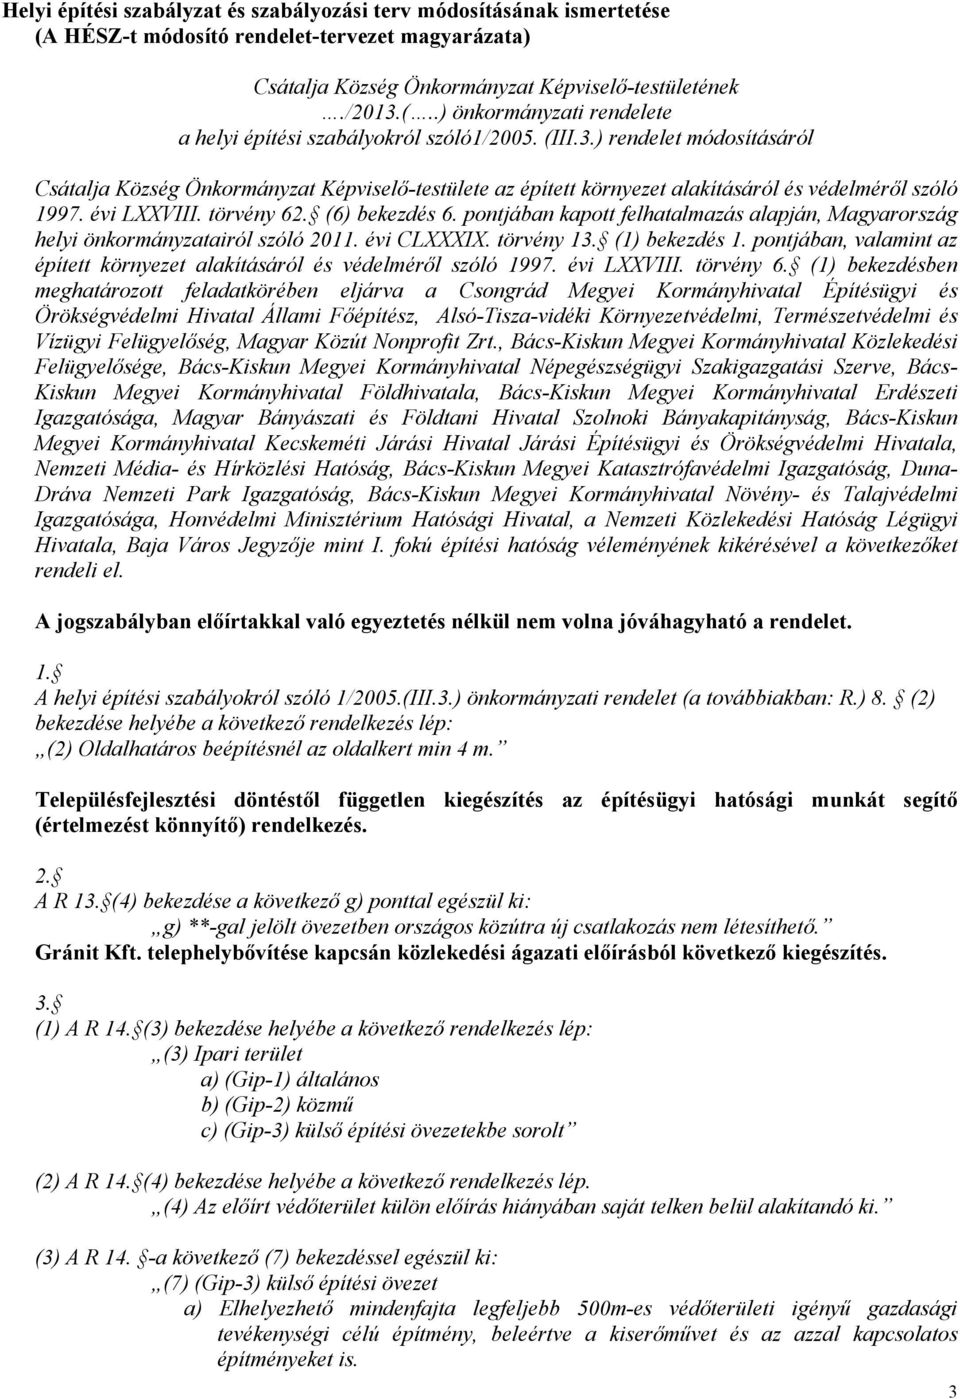 pontjában kapott felhatalmazás alapján, Magyarország helyi önkormányzatairól szóló 2011. évi CLXXXIX. törvény 13. (1) bekezdés 1.